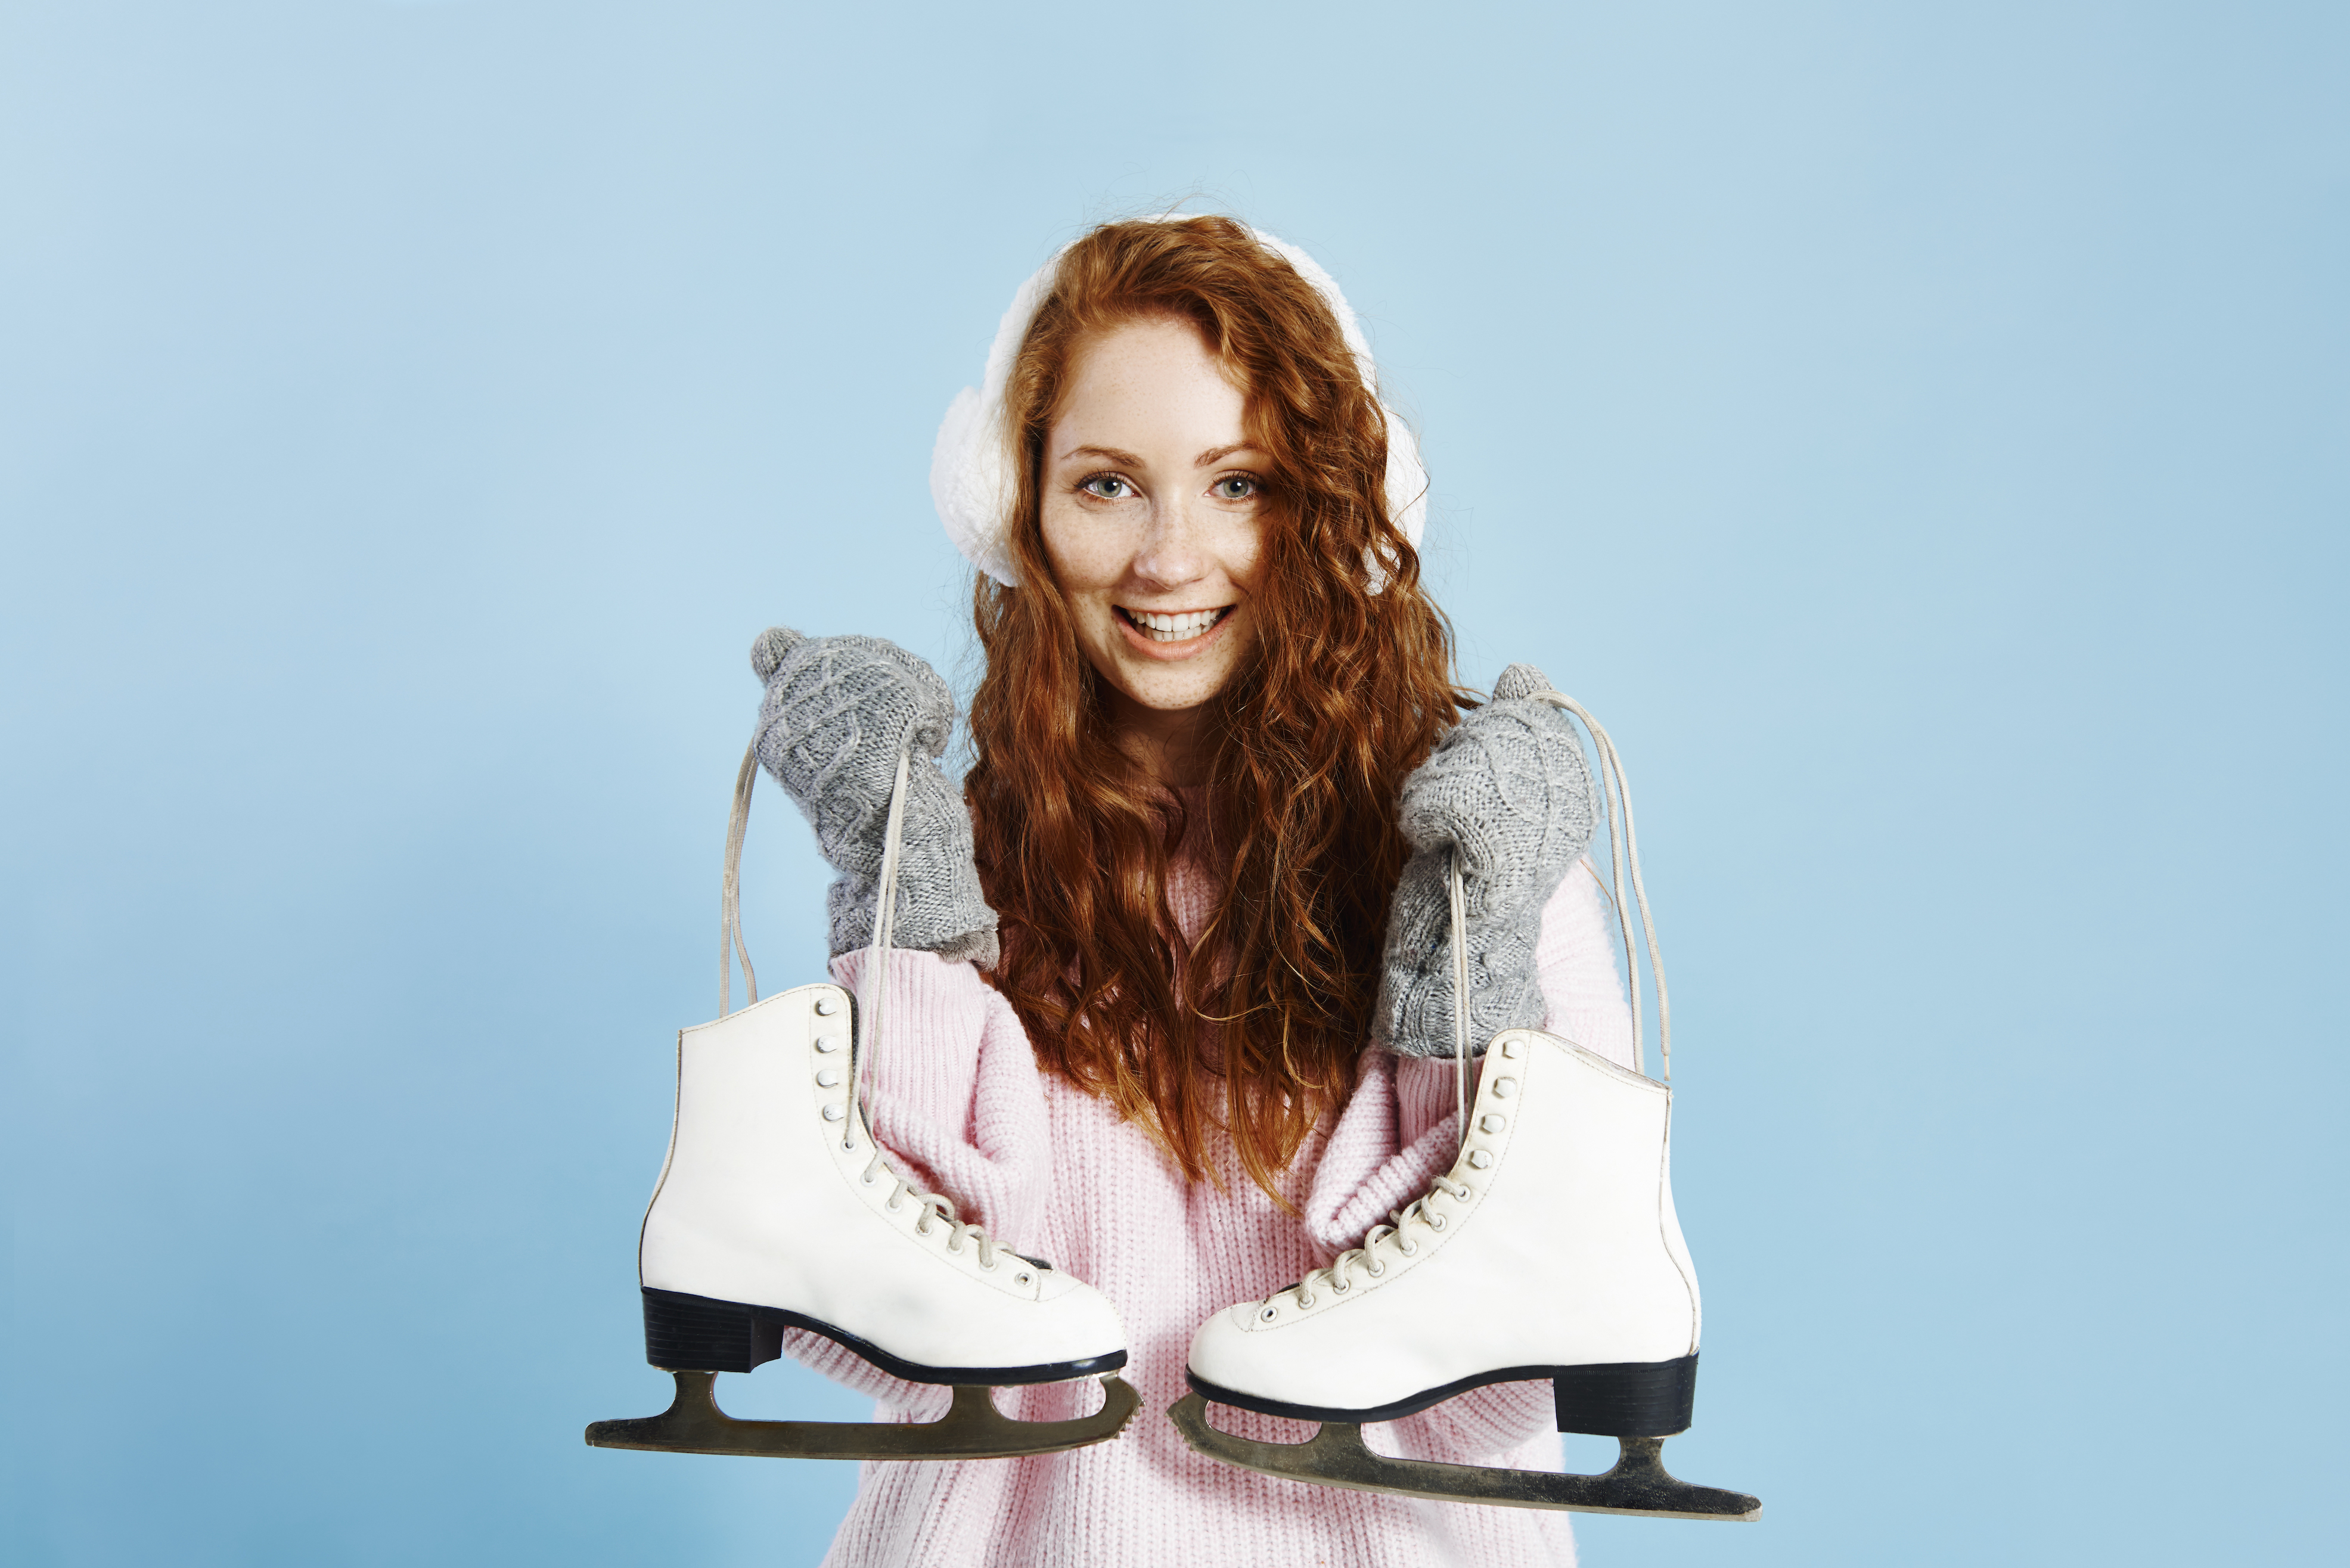 portrait-smiling-girl-holding-ice-skates.jpg